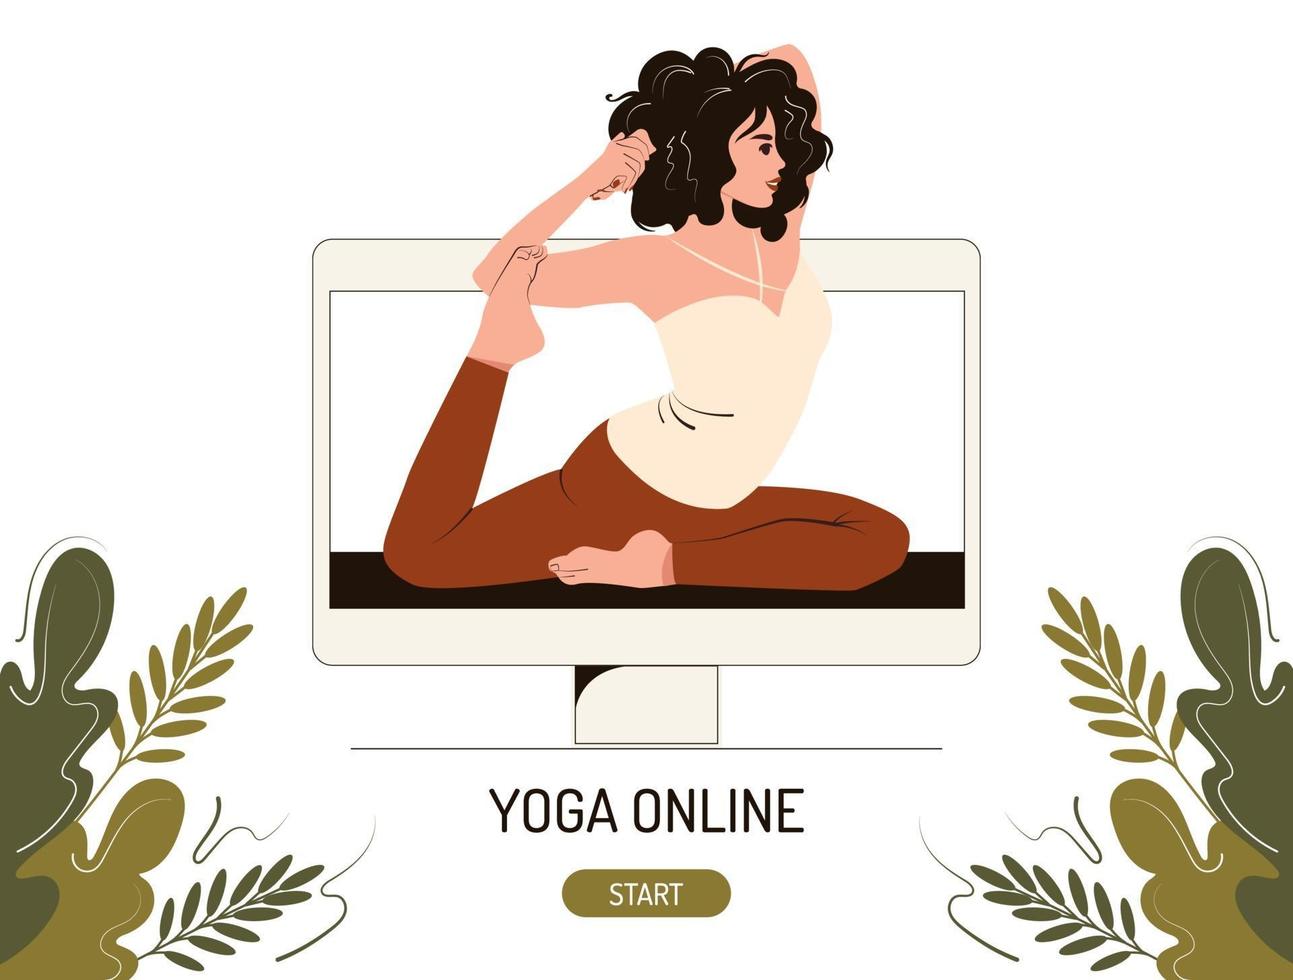 Online-Yoga-Kurs-Konzept. Eine junge Frau am Computermonitor leitet eine Meisterklasse über Stretching und Asana. flache Vektorillustration vektor